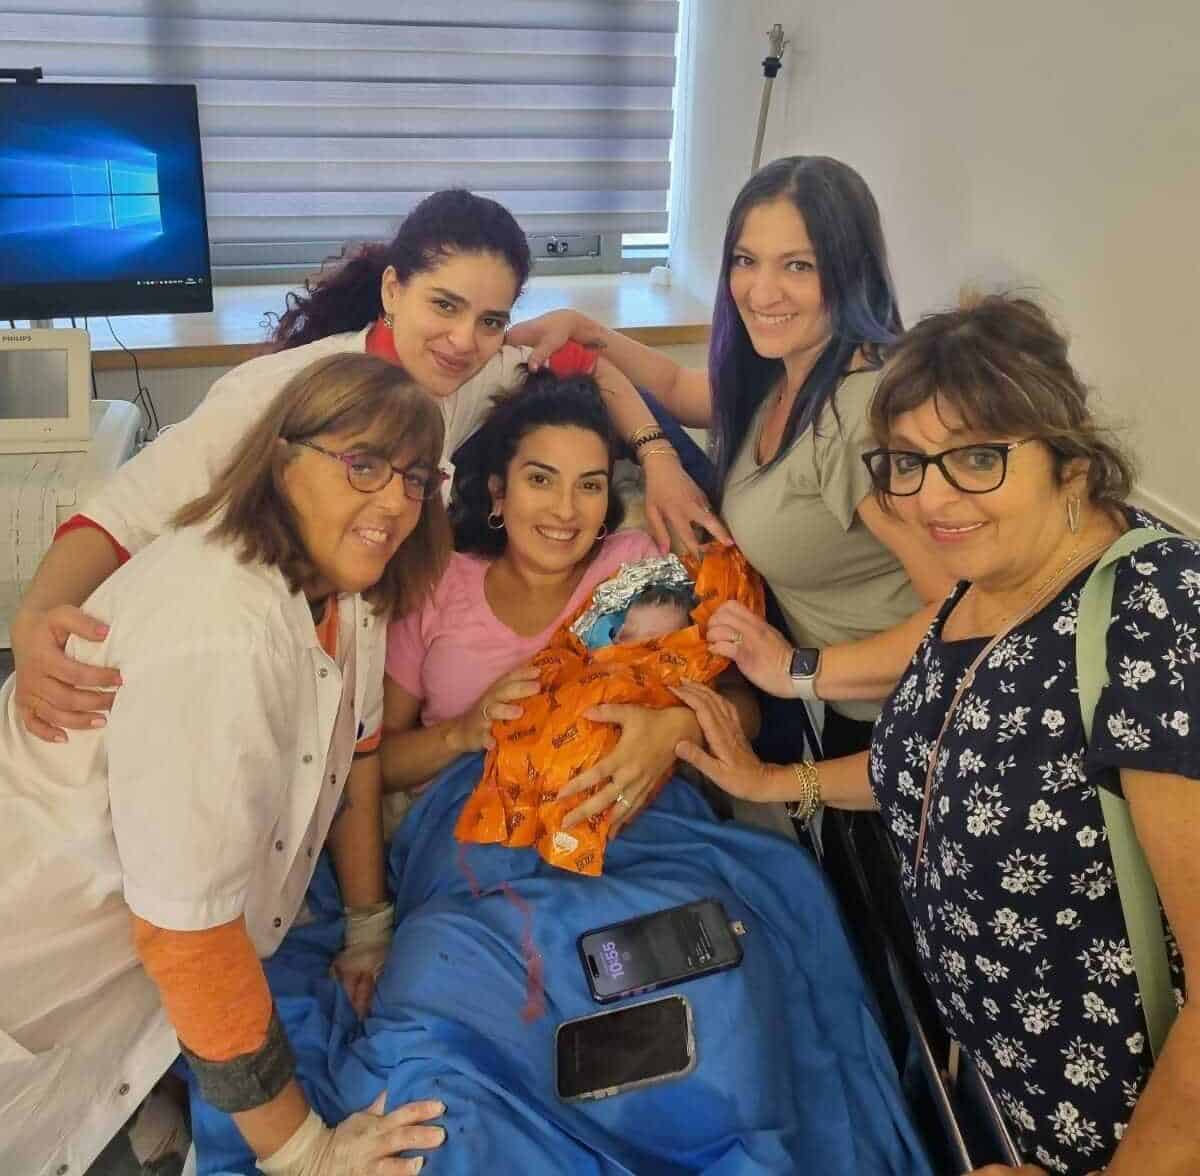 תמונת הניצחון צוות מכבי מקיף את המטופלת ביחד עם התינוקת החדשה e1713743591378